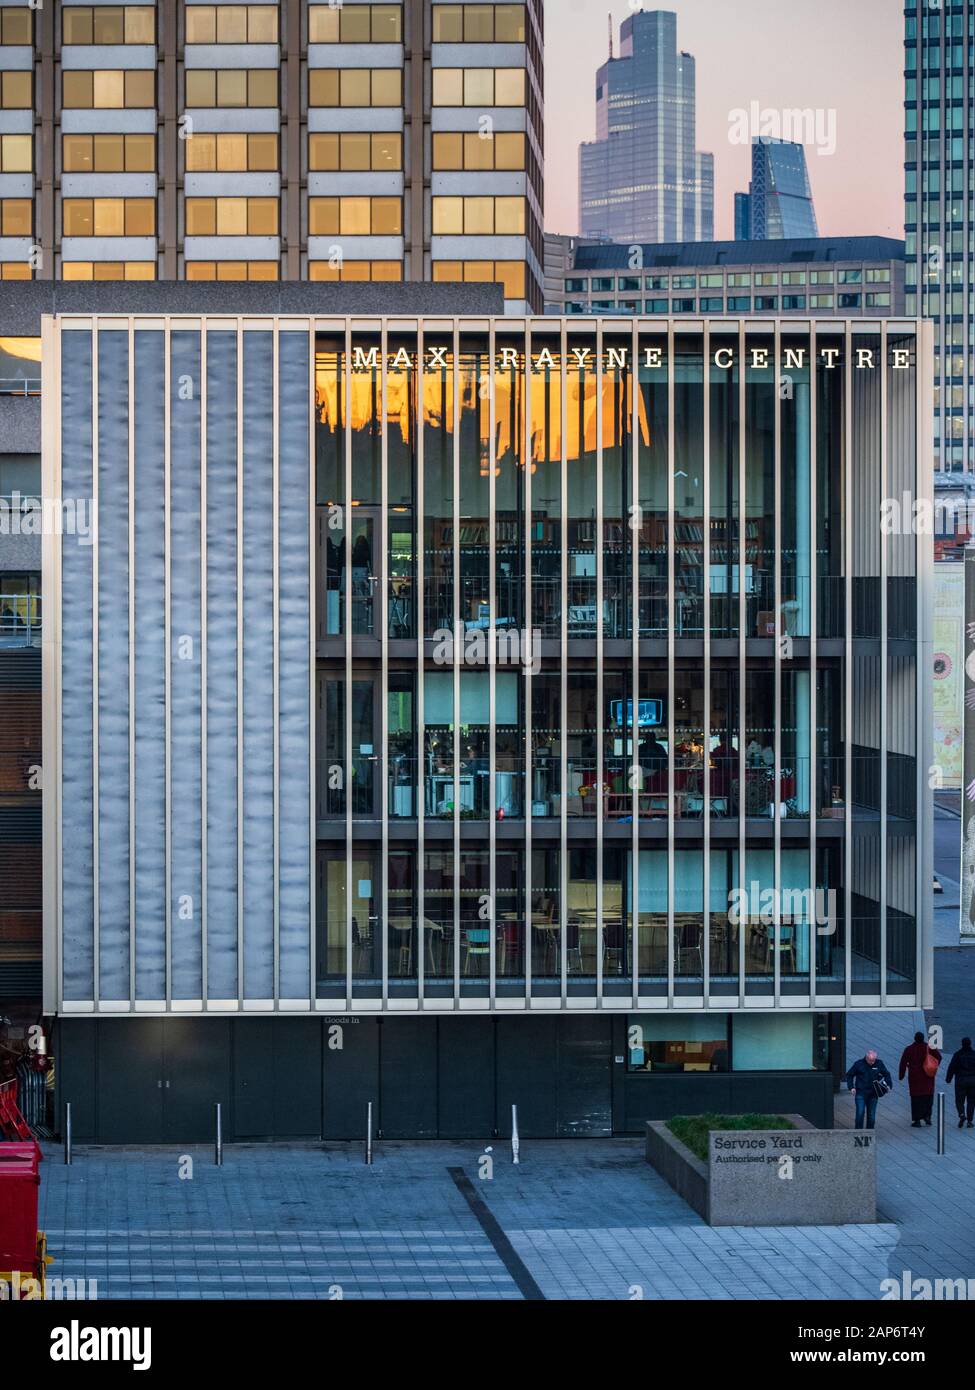 La Max Rayne centro nei pressi del Teatro Nazionale sulla South Bank di Londra. Essa ospita all'avanguardia officina di verniciatura & uffici di produzione, Foto Stock